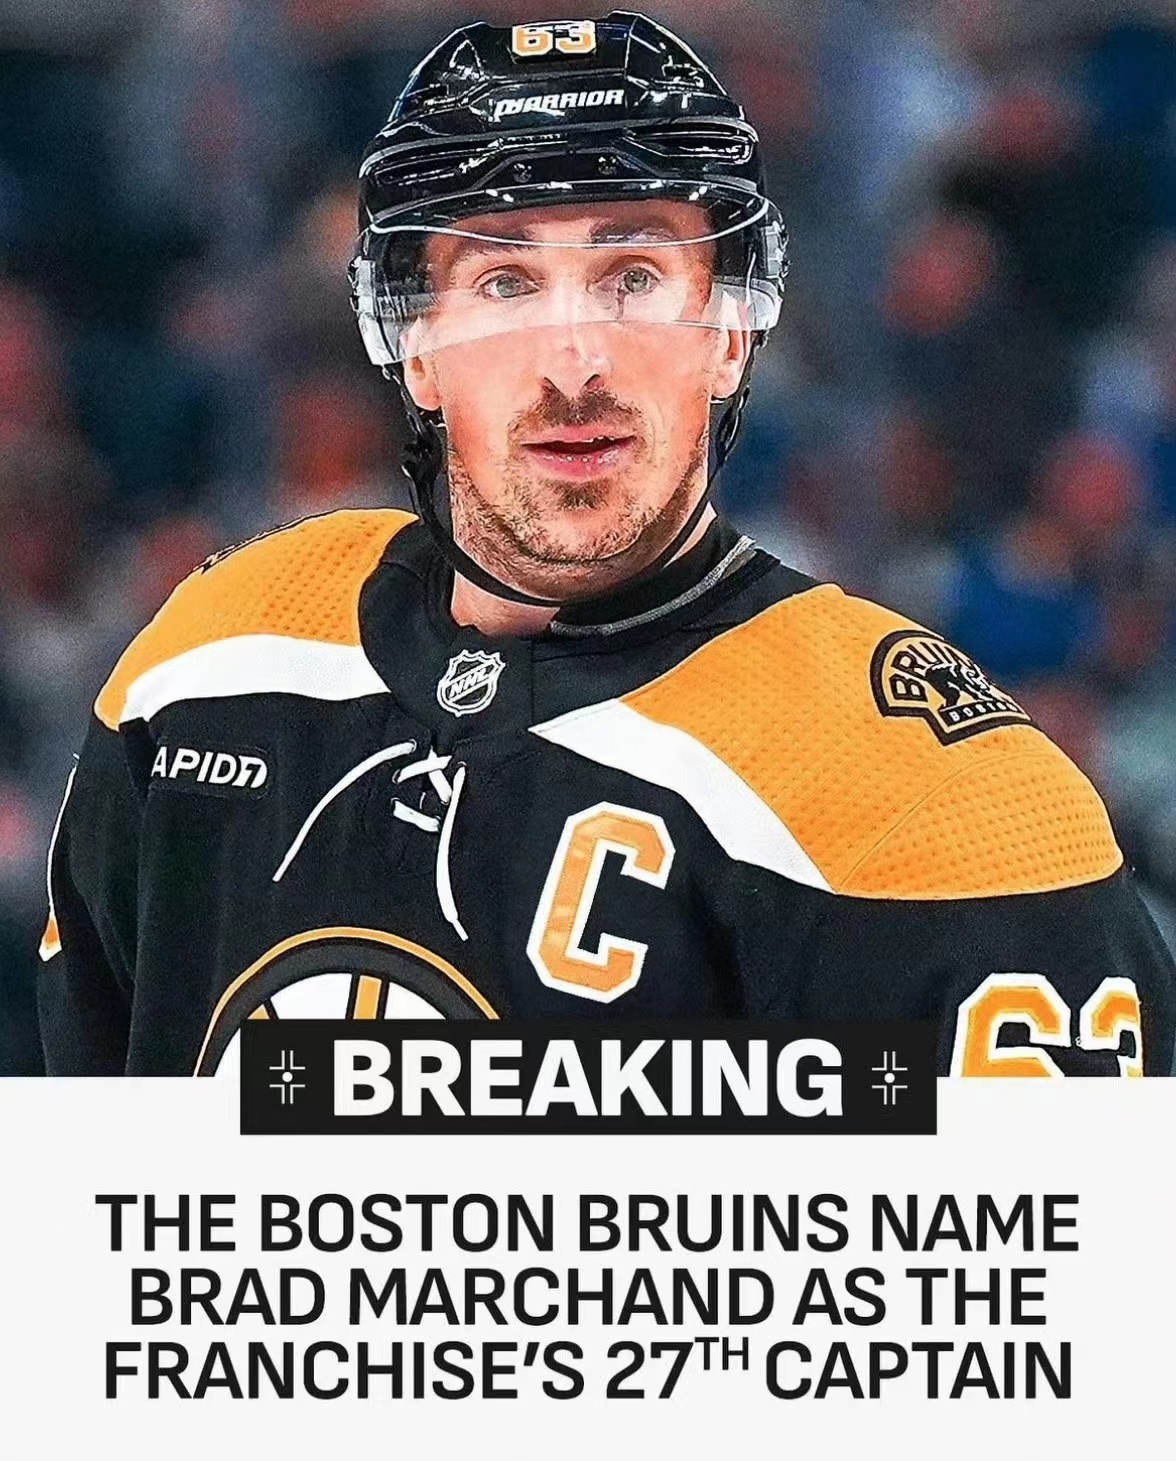 Brad Marchand becomes captain, Bruins create a new legendary era